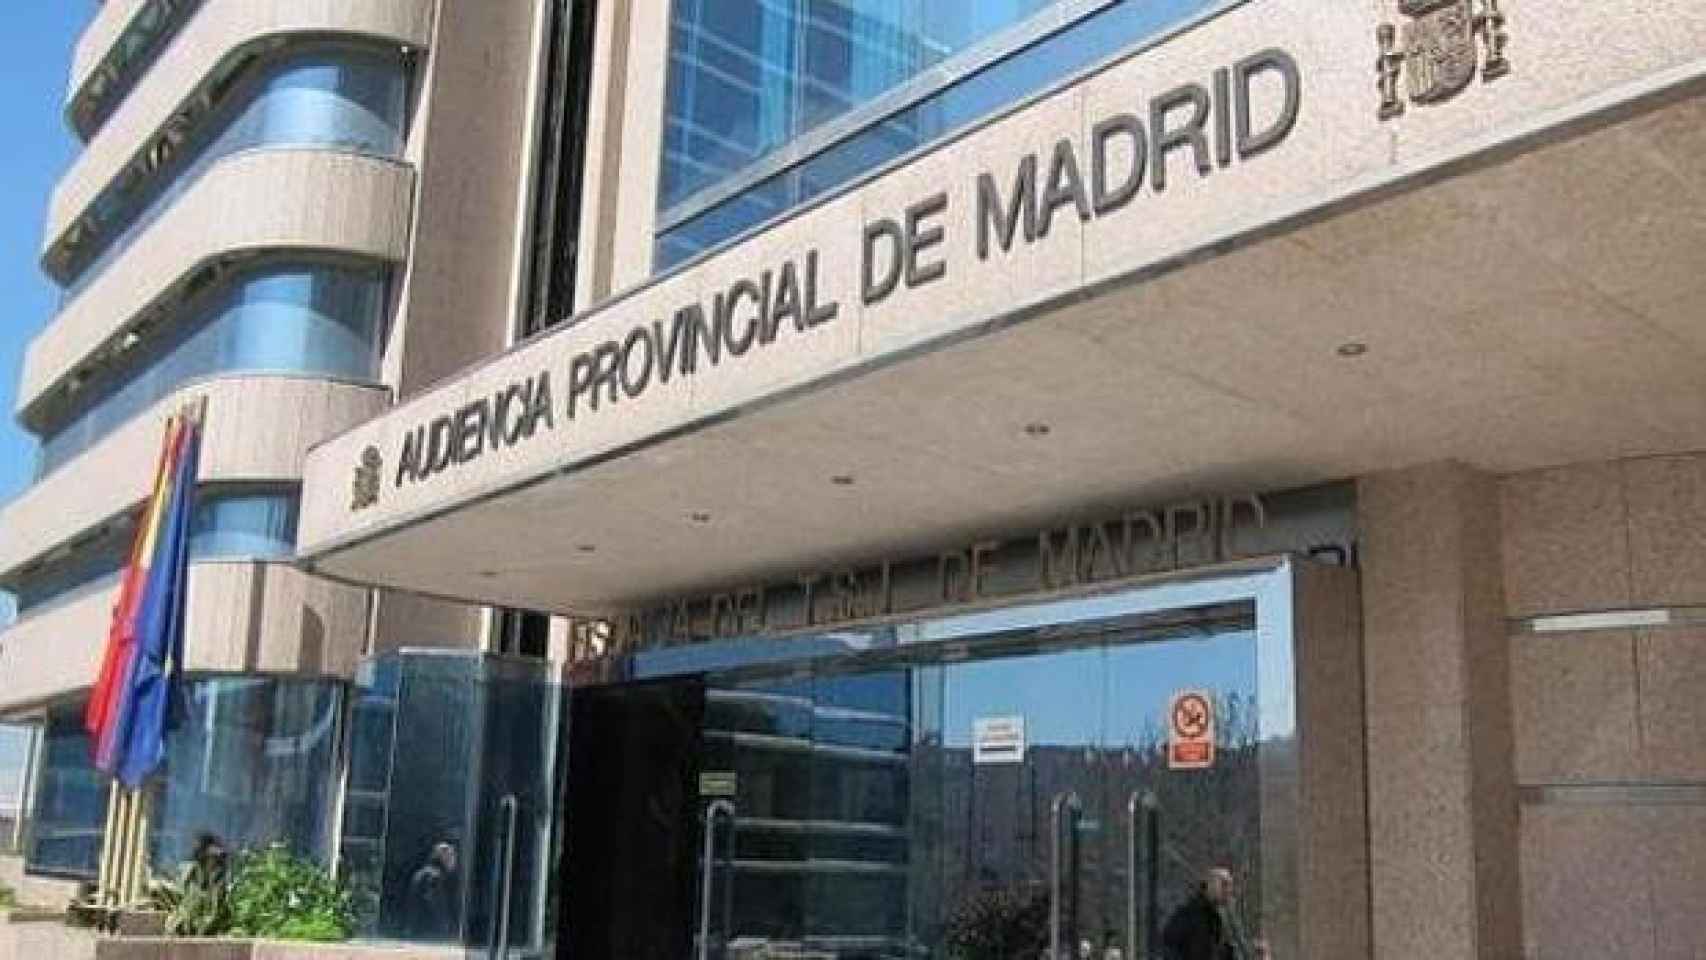 La Audiencia Provincial de Madrid.